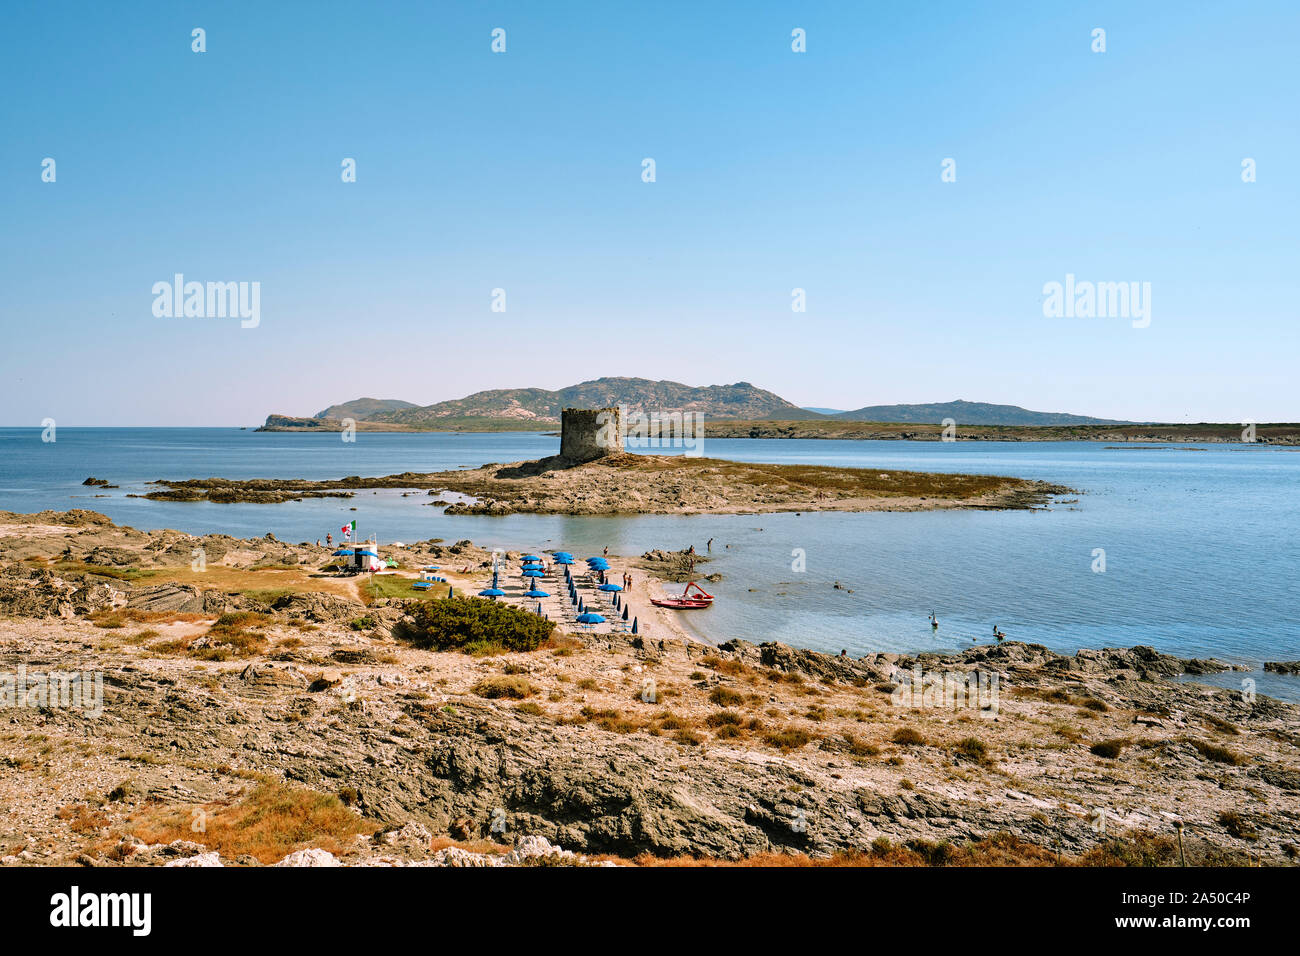 Spiaggia della Torre / Torre della Pelosa e Isola Piana, Parco Nazionale dell'Asinara Stintino Sassari Sardegna Italia - La spiaggia della Pelosa Sardegna Foto Stock